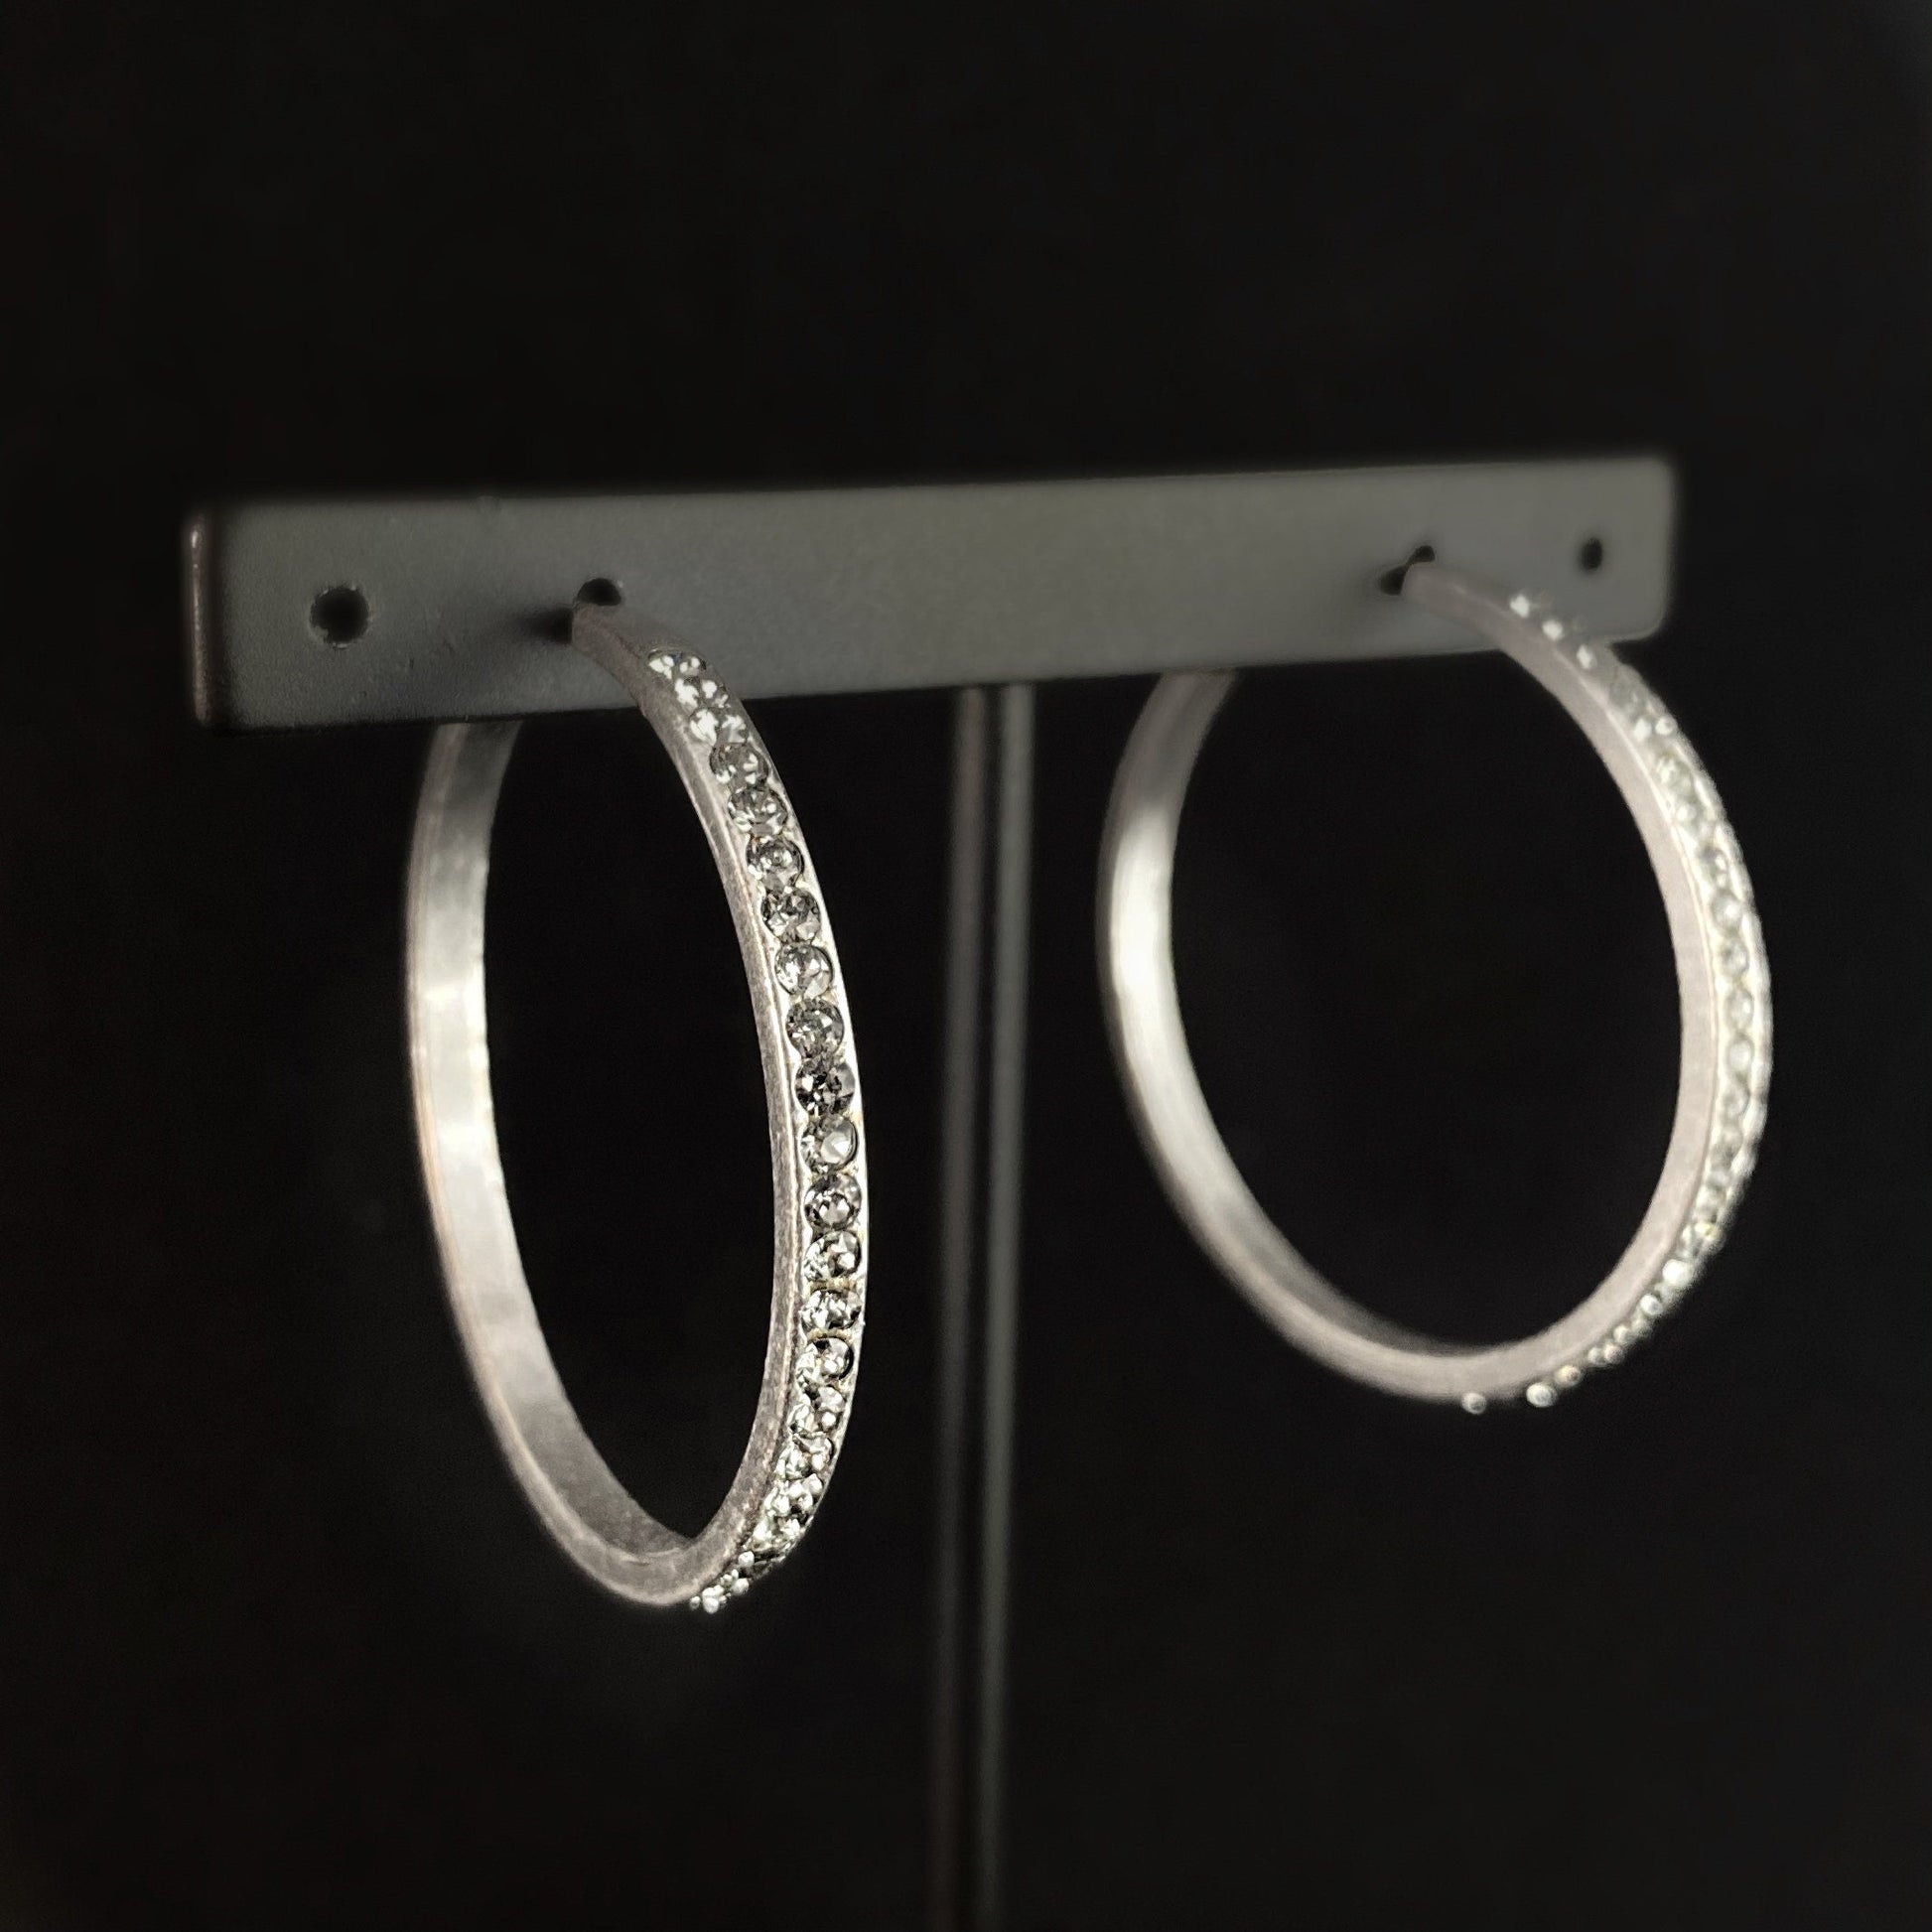 Silver Swarovski Crystal Hoop Earrings, Clear - La Vie Parisienne by Catherine Popesco